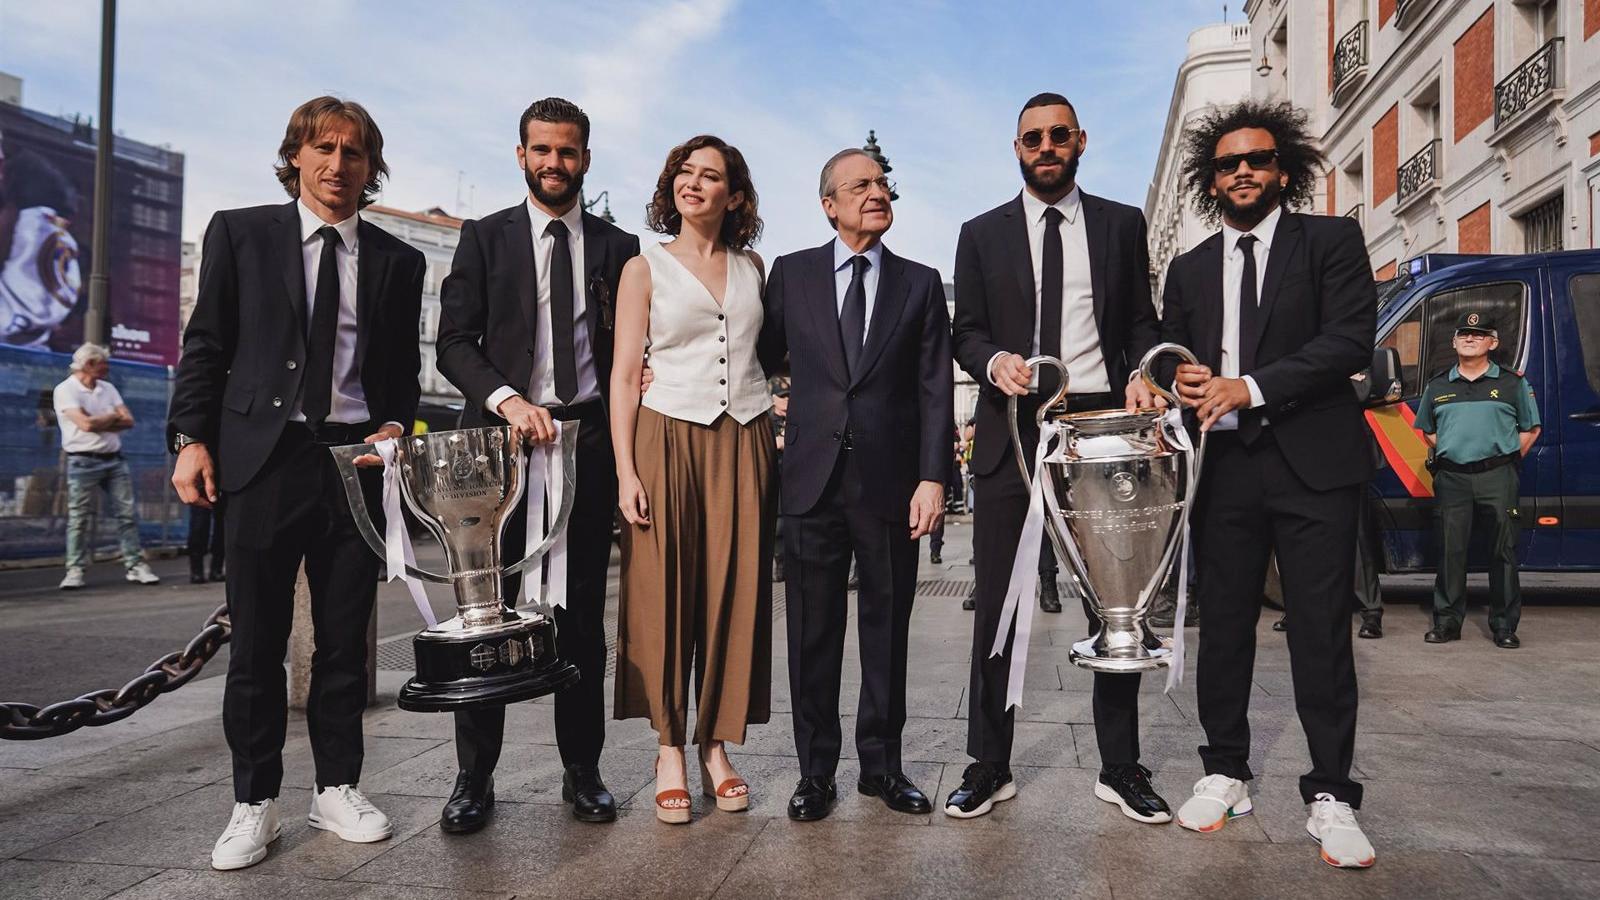 Díaz Ayuso celebra la 14ª 'Champions' del Real Madrid destacando los valores que transmite: "equipo, esfuerzo y excelencia"